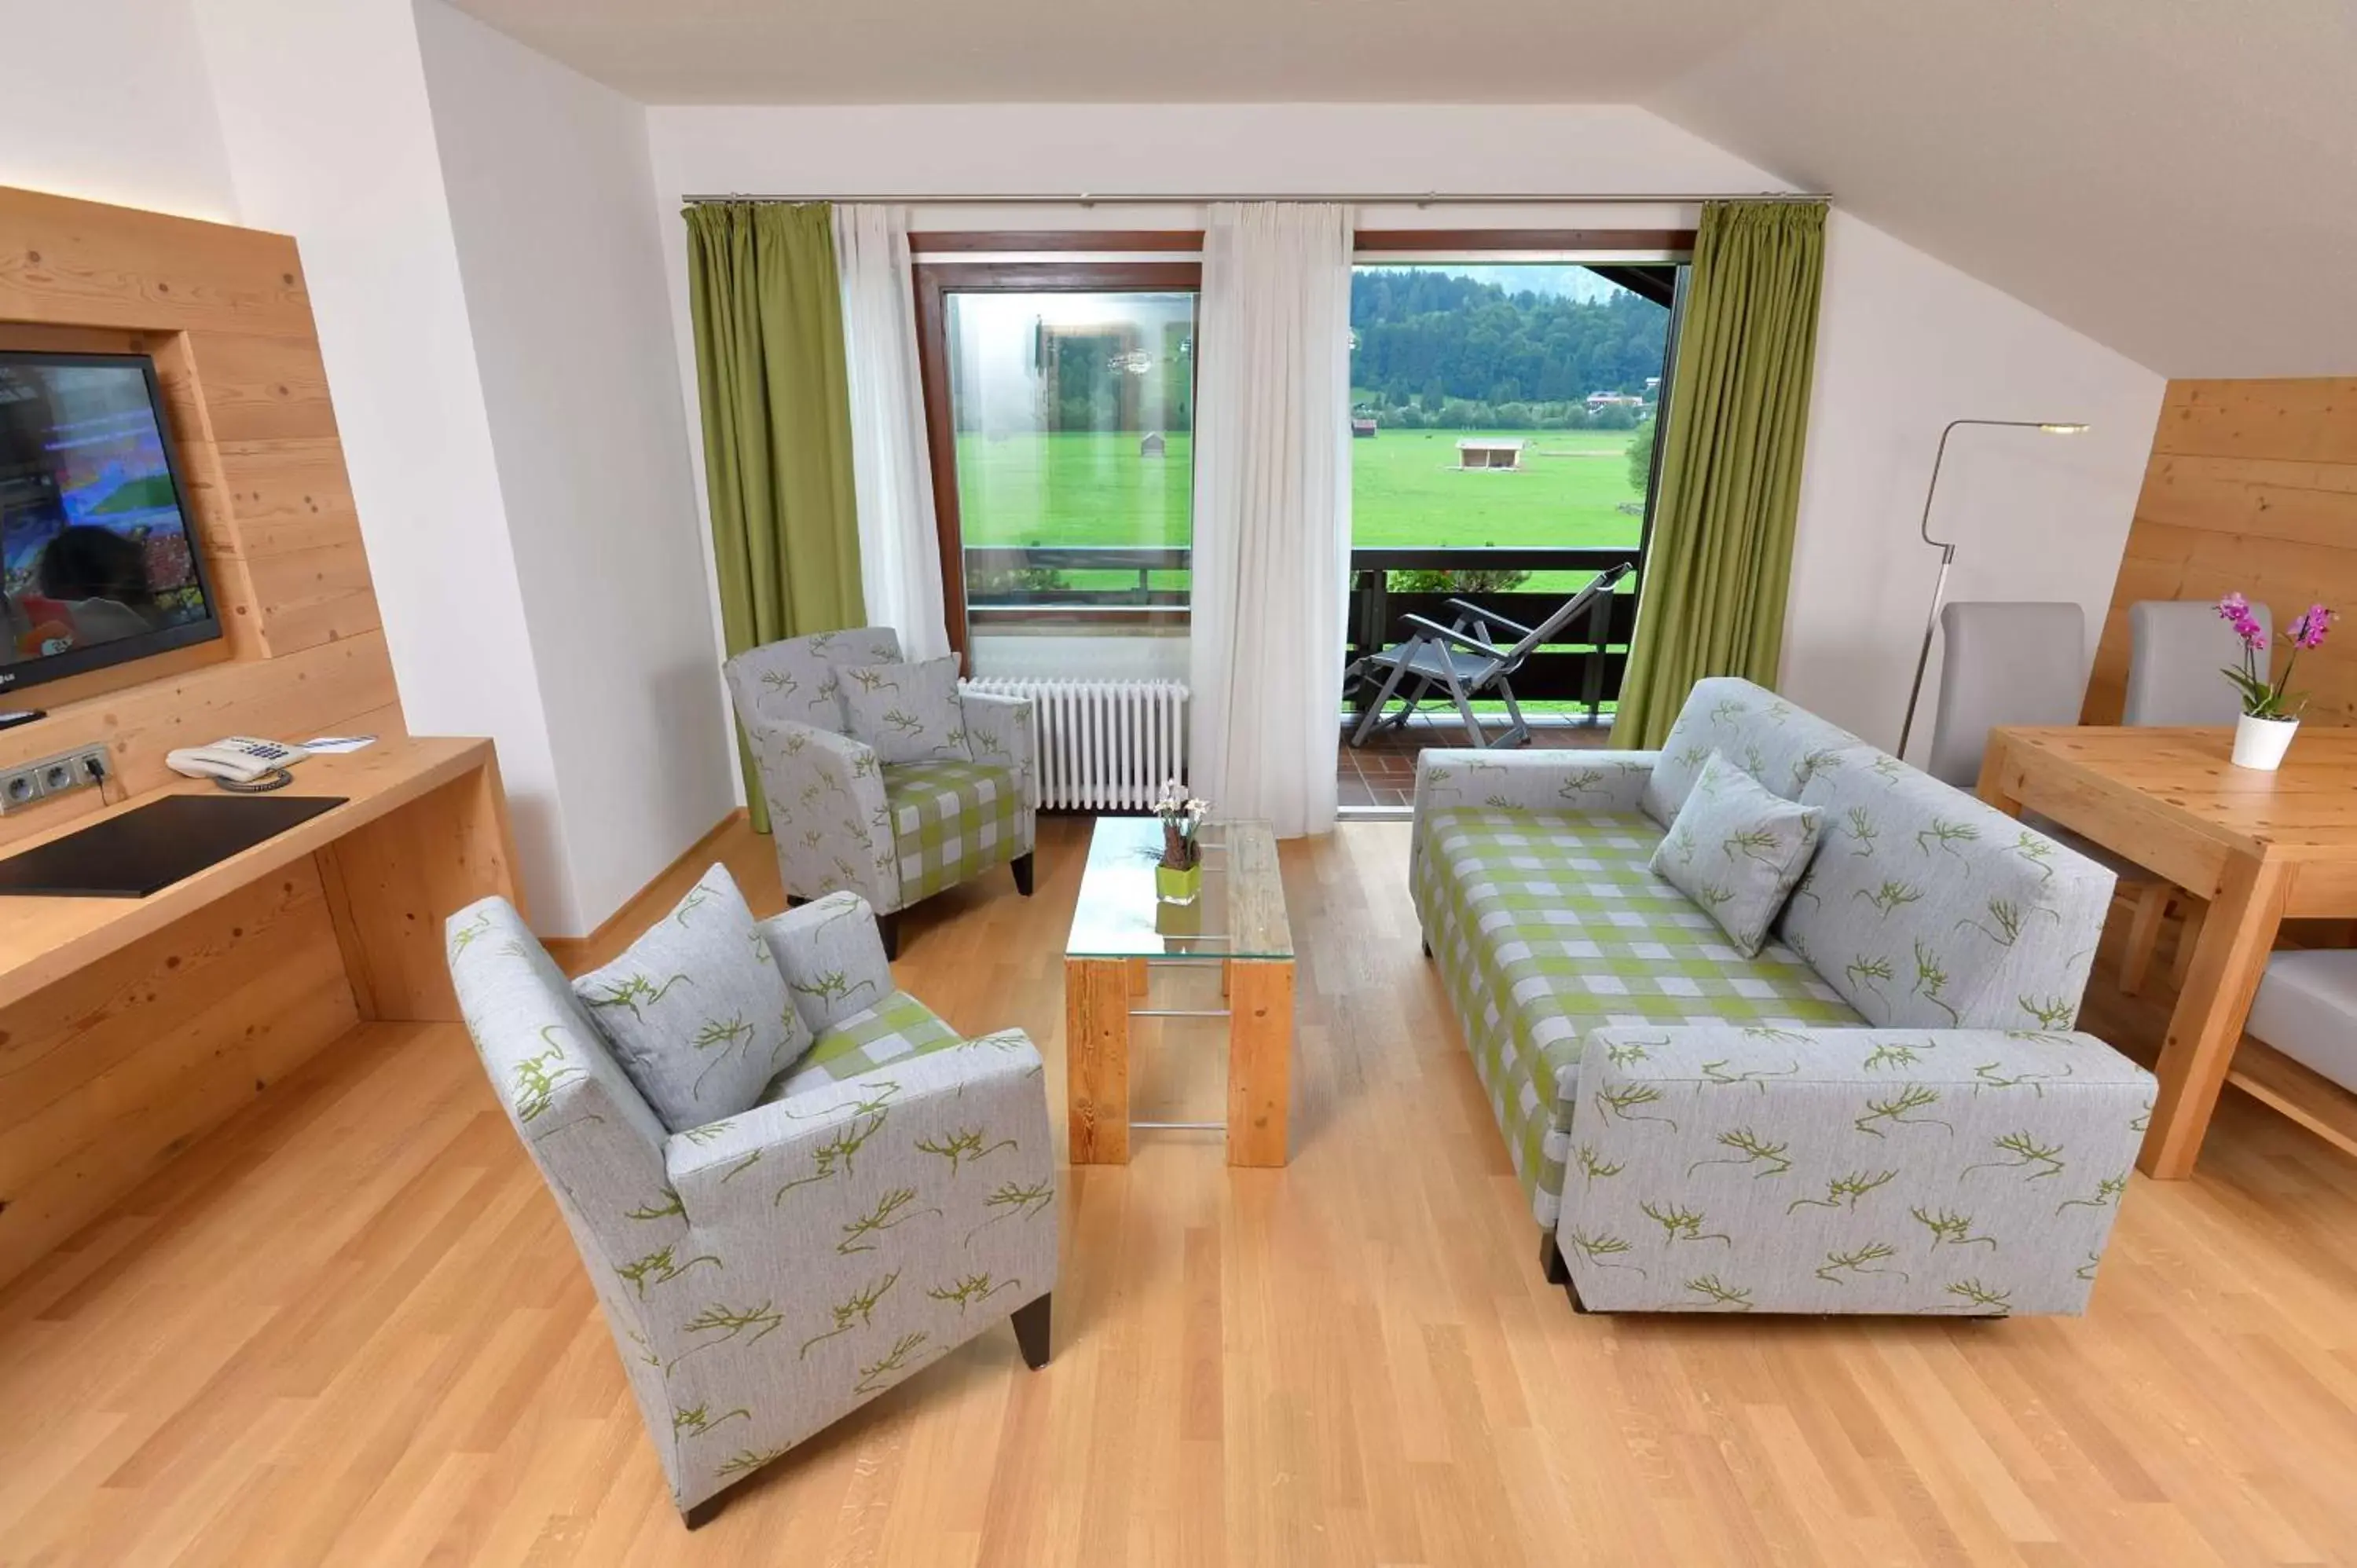 Bedroom, Seating Area in Best Western Plus Hotel Alpenhof